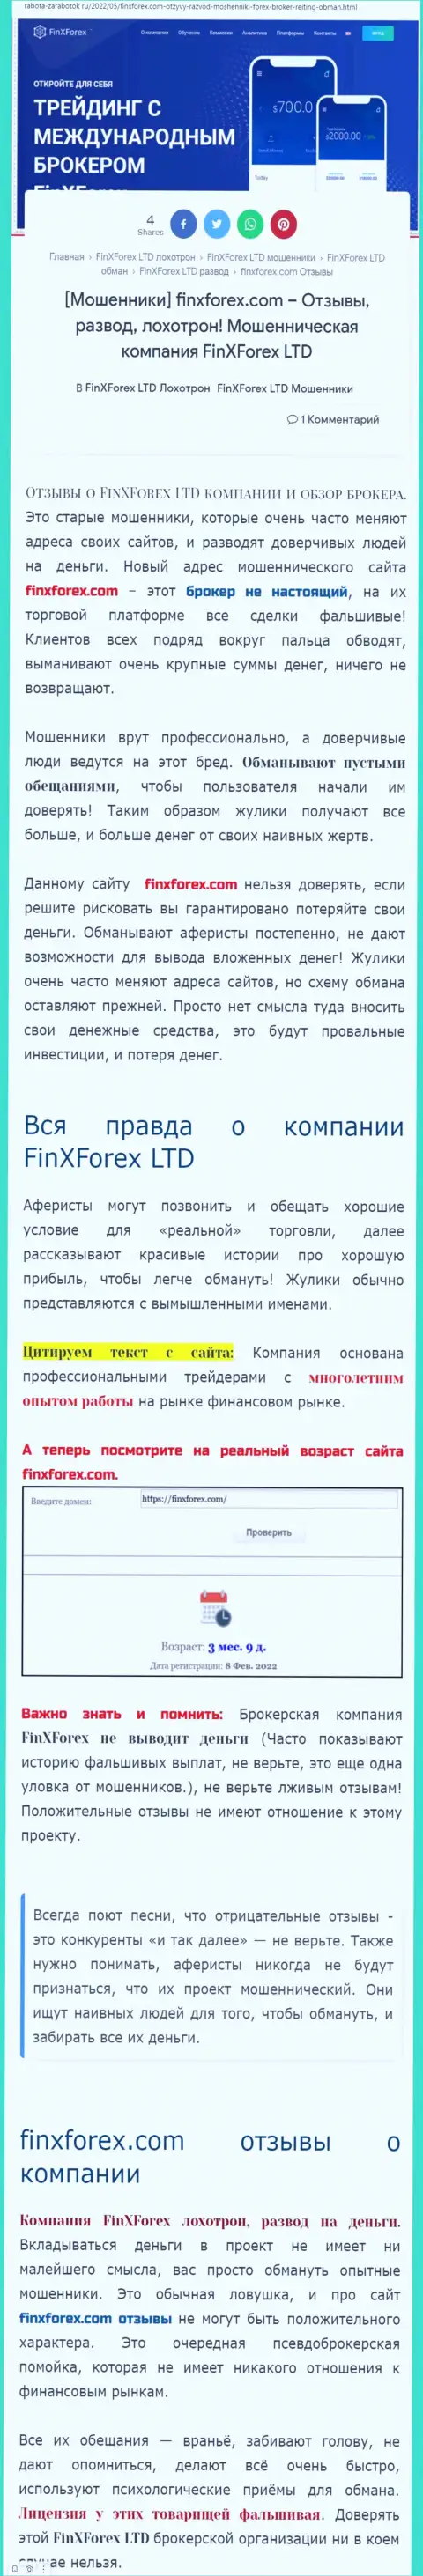 Автор статьи о FinXForex LTD заявляет, что в ФинХФорекс ЛТД мошенничают